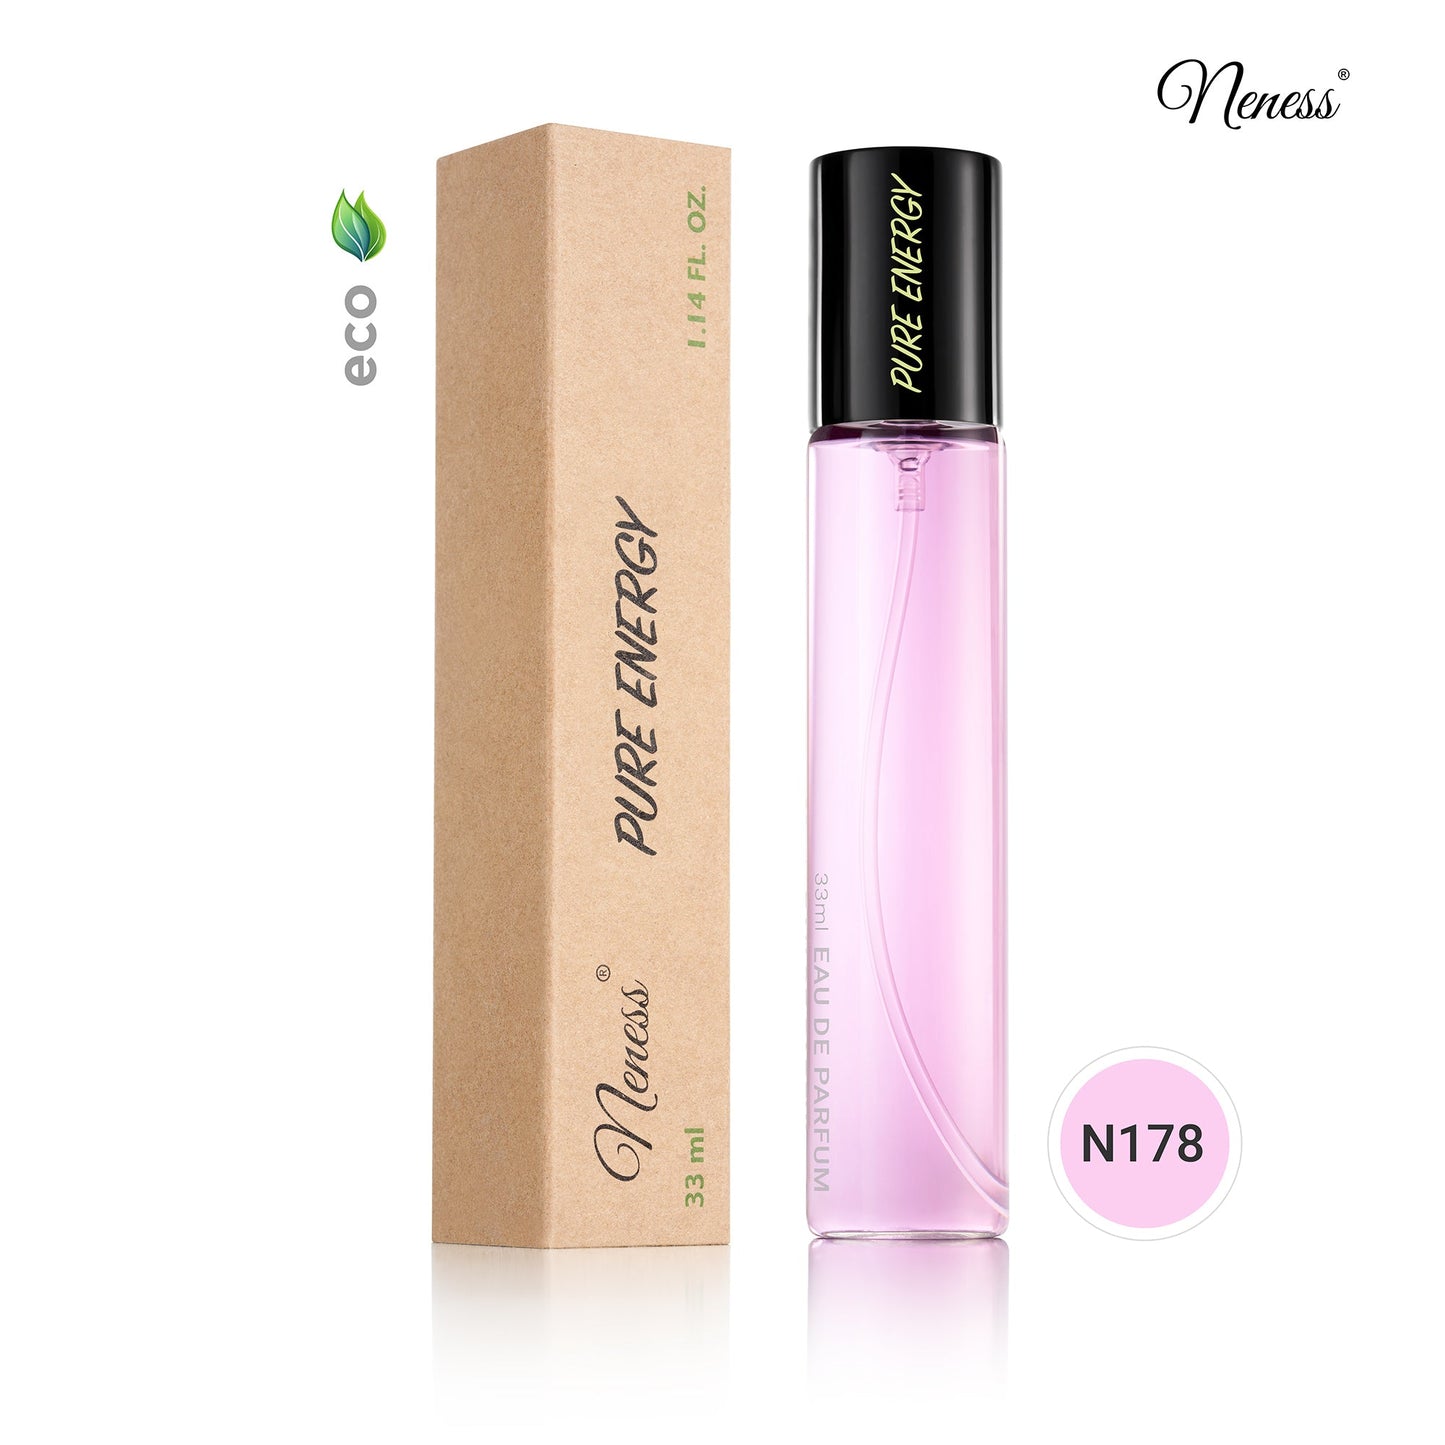 N178. Neness Pure Energy - 33 ml - Parfum Pour Femme